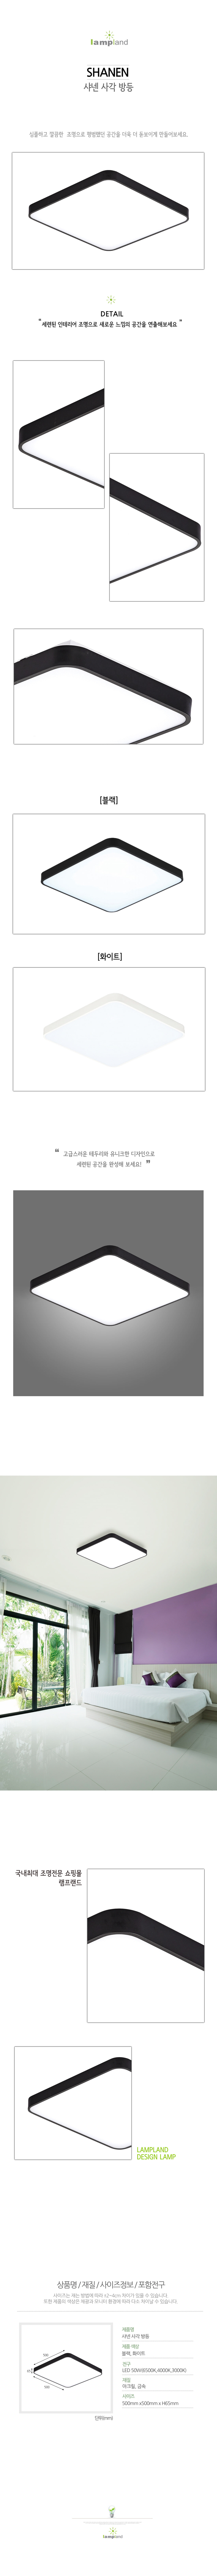 [LED 50W] 샤넨 사각 방등(블랙, 화이트) 50w